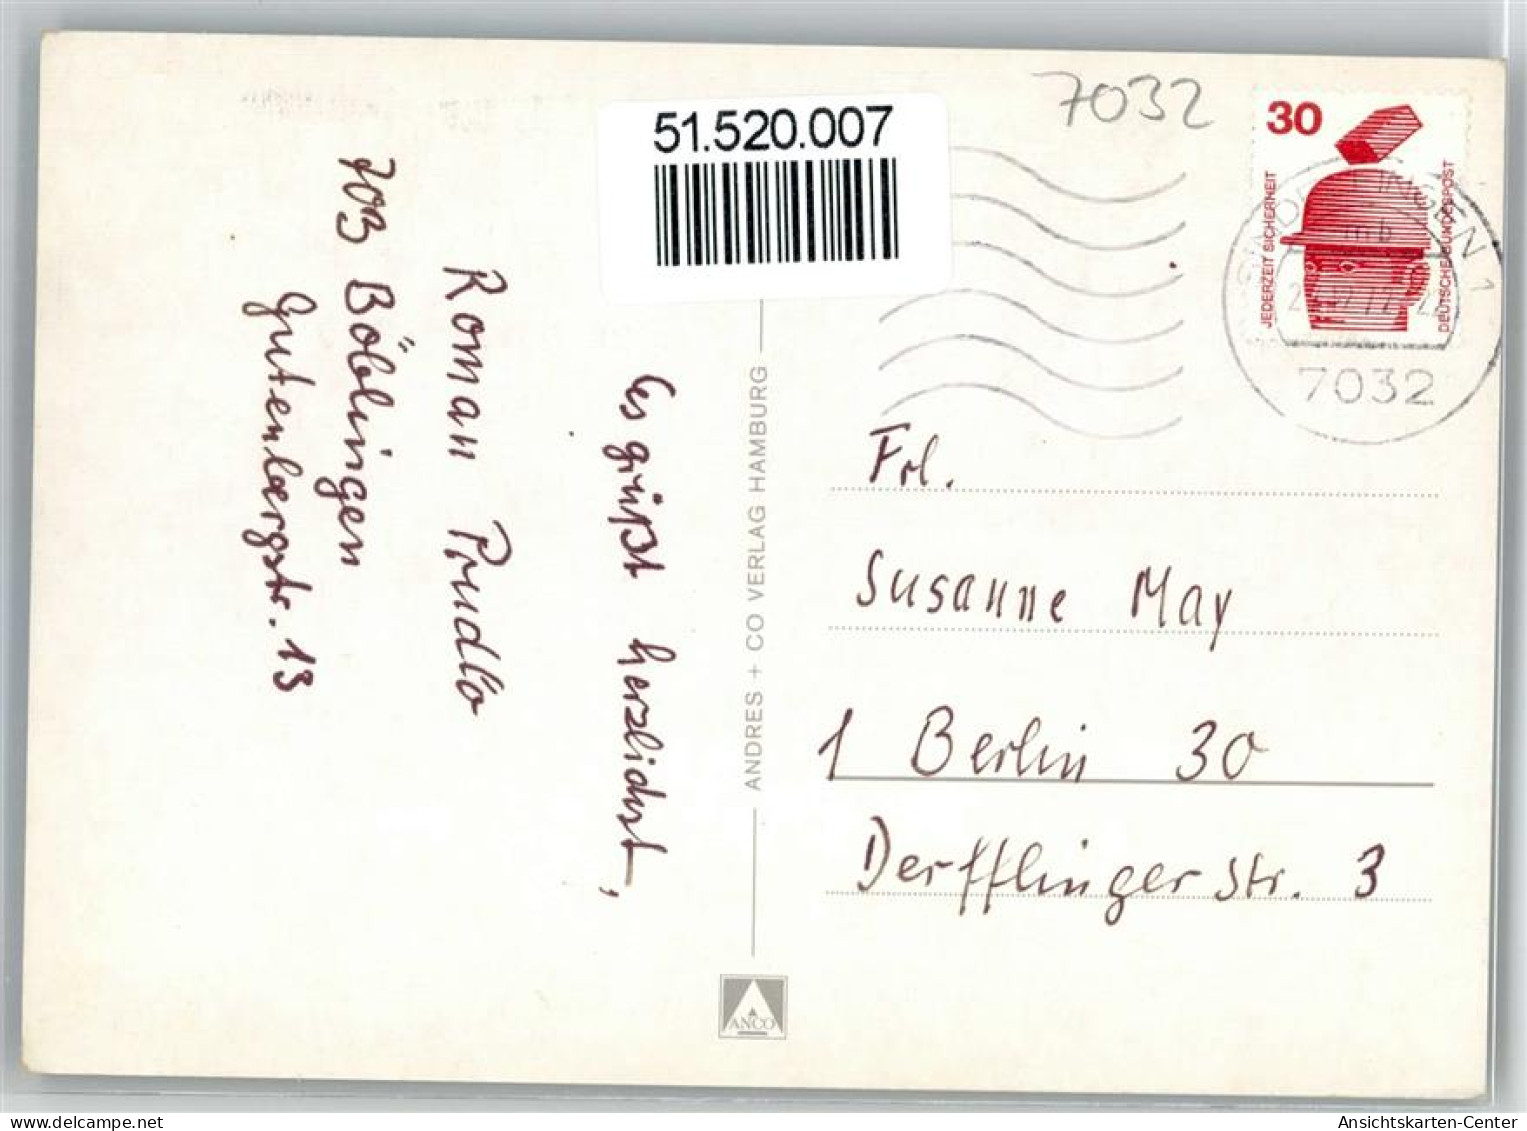 51520007 - Boeblingen - Böblingen